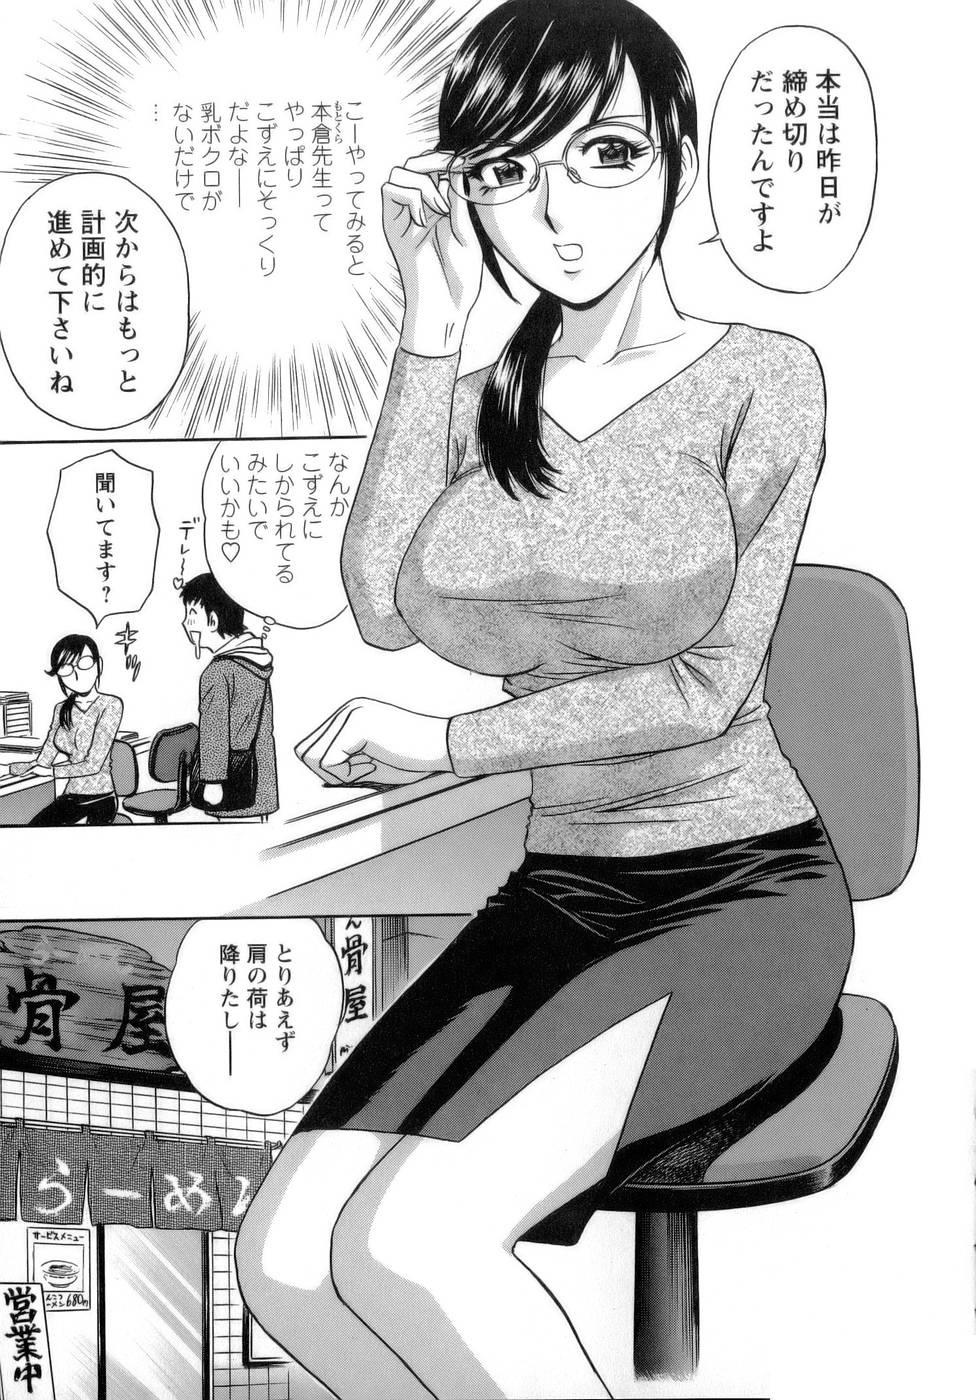 [Hidemaru] Mo-Retsu! Boin Sensei (Boing Boing Teacher) Vol.1 76